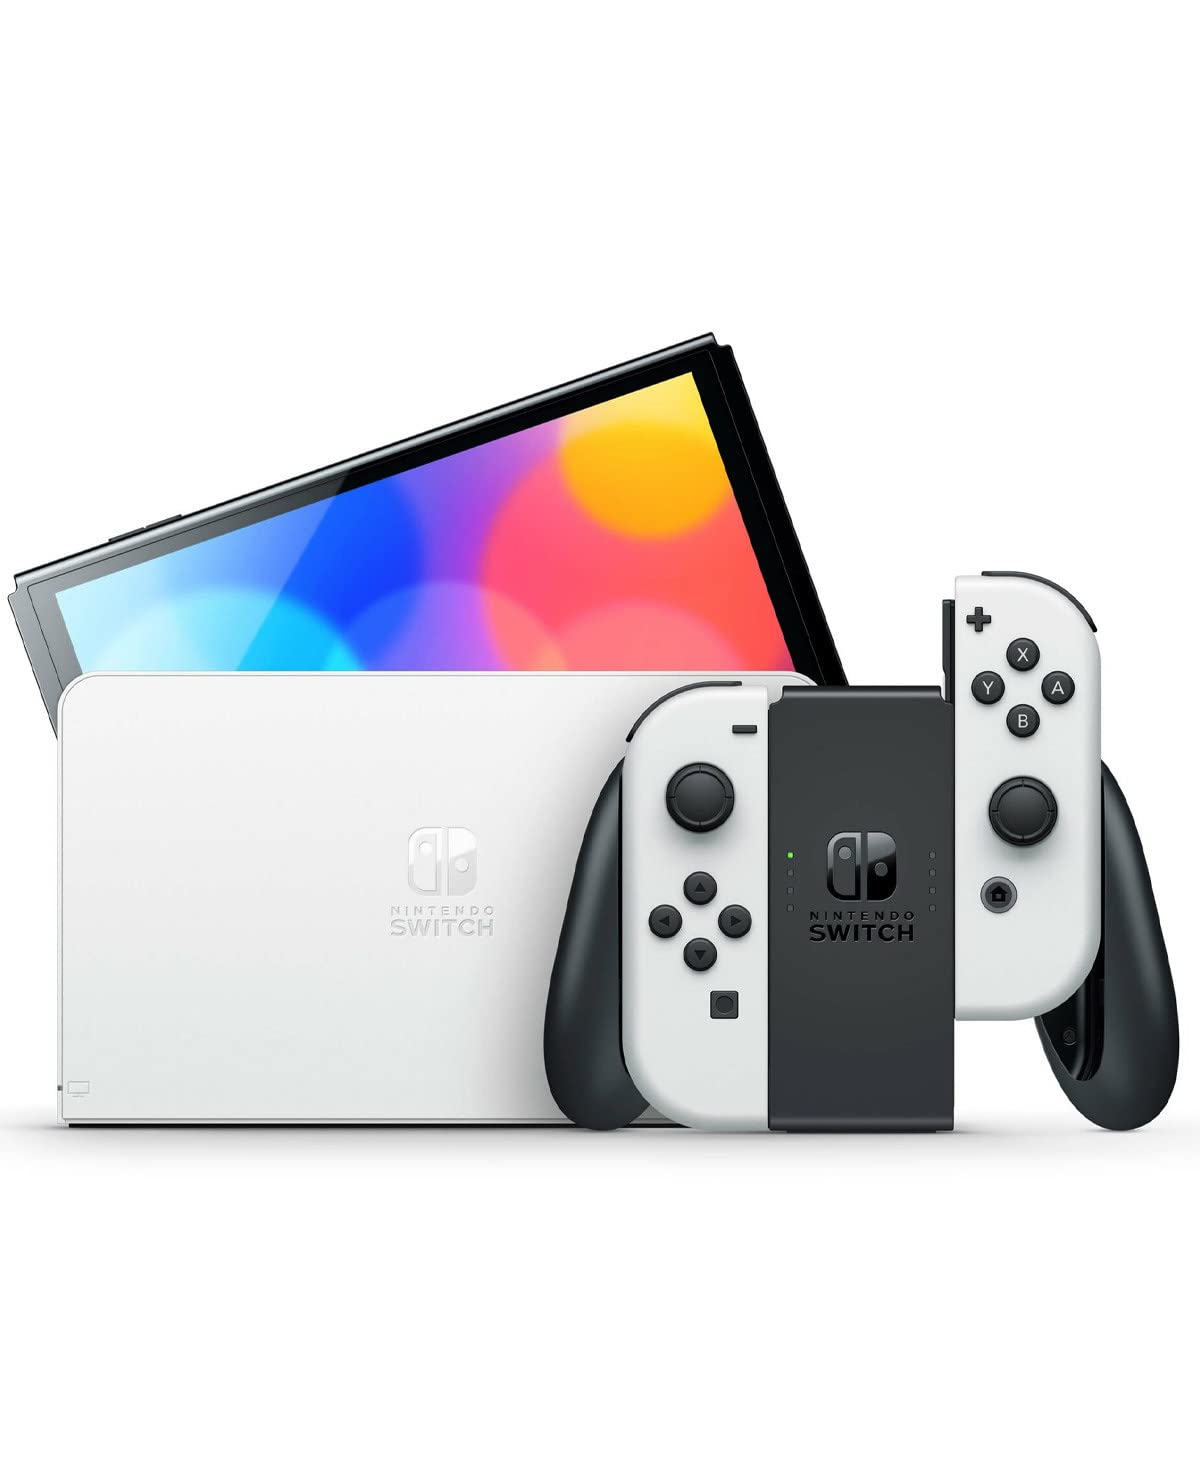 Nintendo Switch - OLED Model White with Zelda Case Bundle